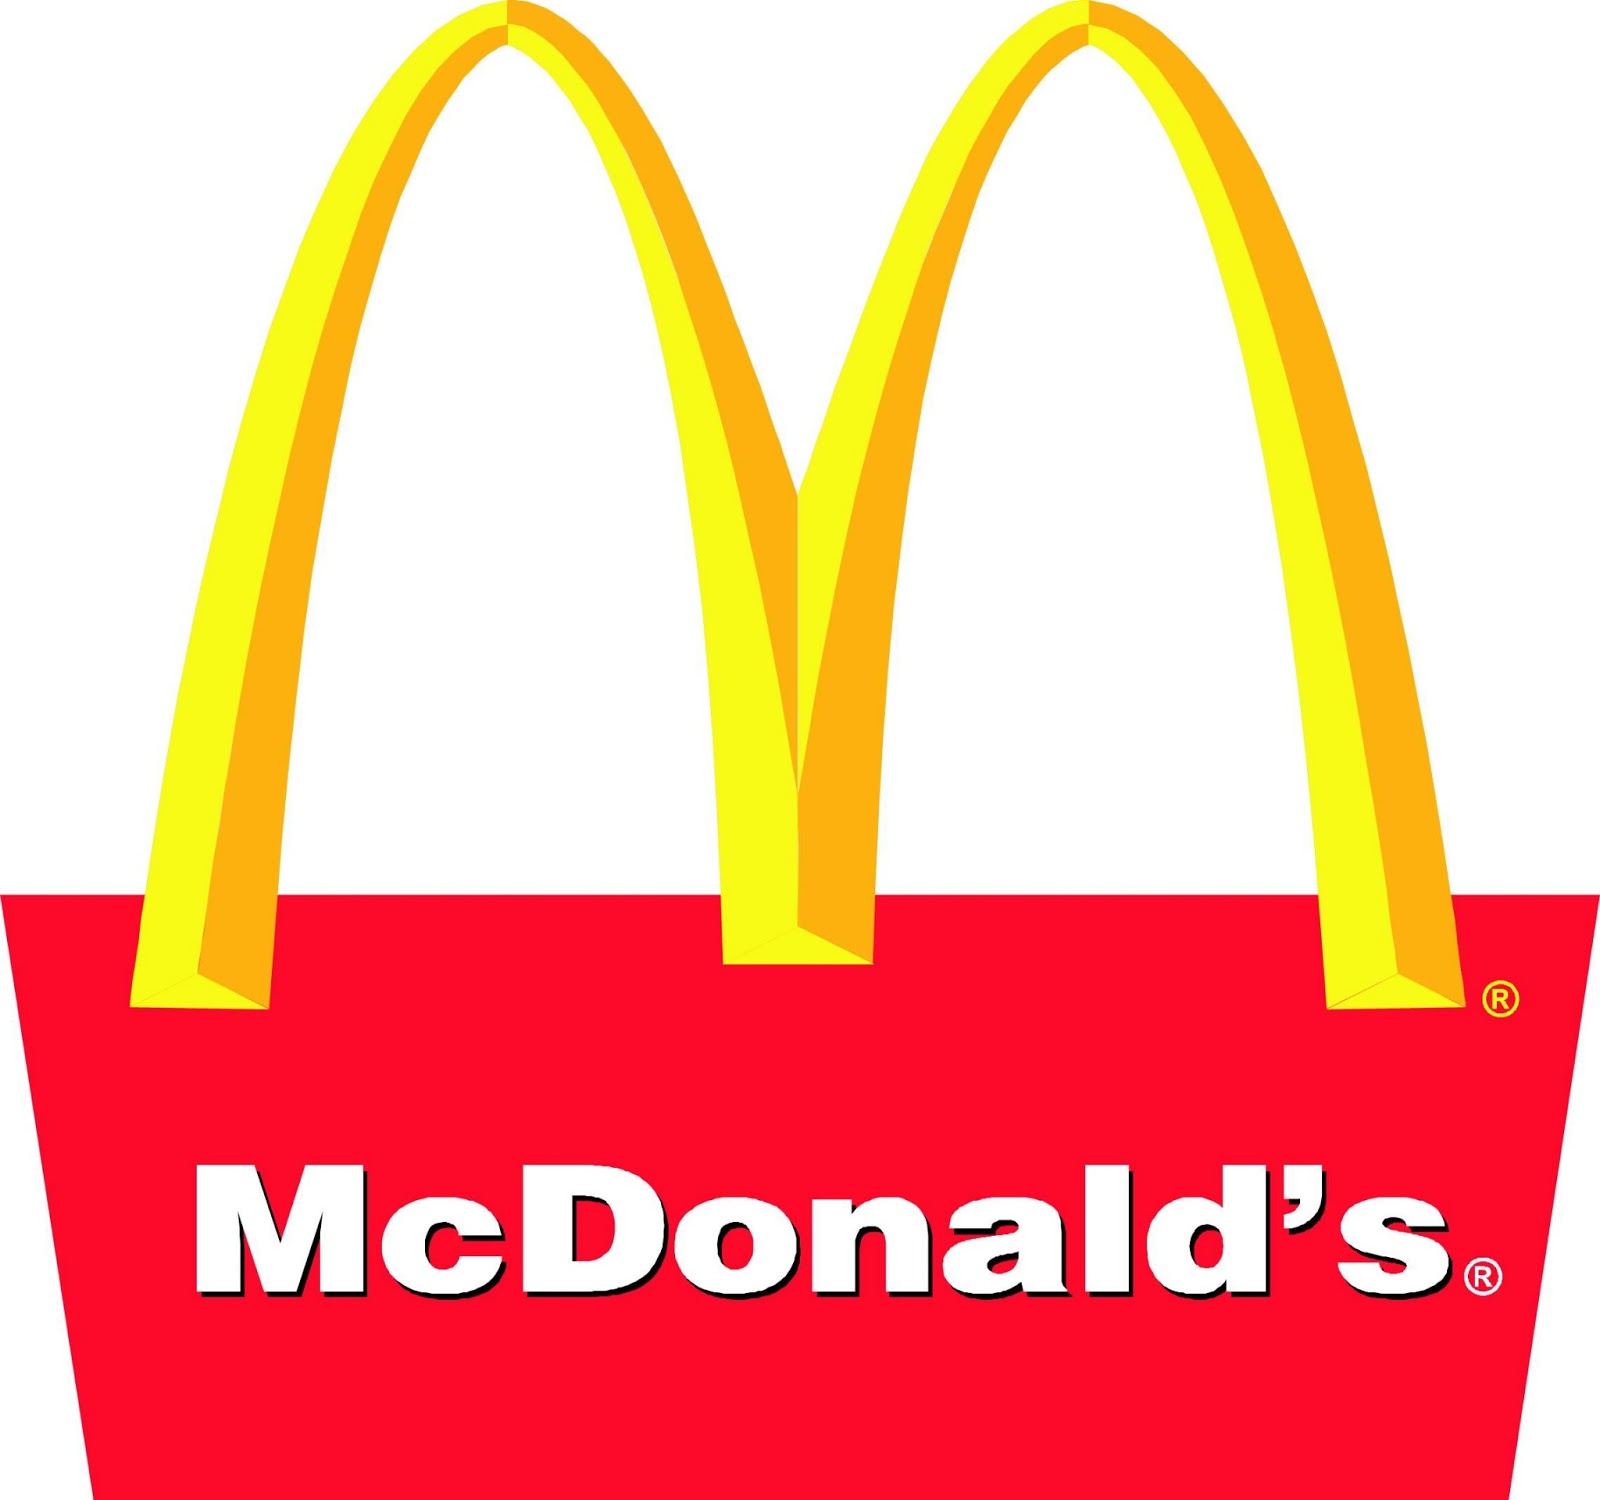  McDonalds Sipari Hatt a r Merkezi Telefon Numaras 